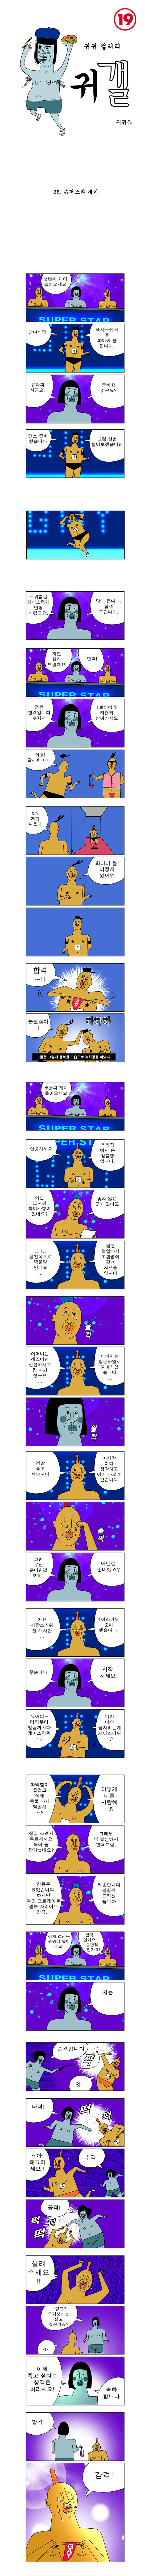 귀귀의 게이만화 - 슈퍼스타 게이.jpg